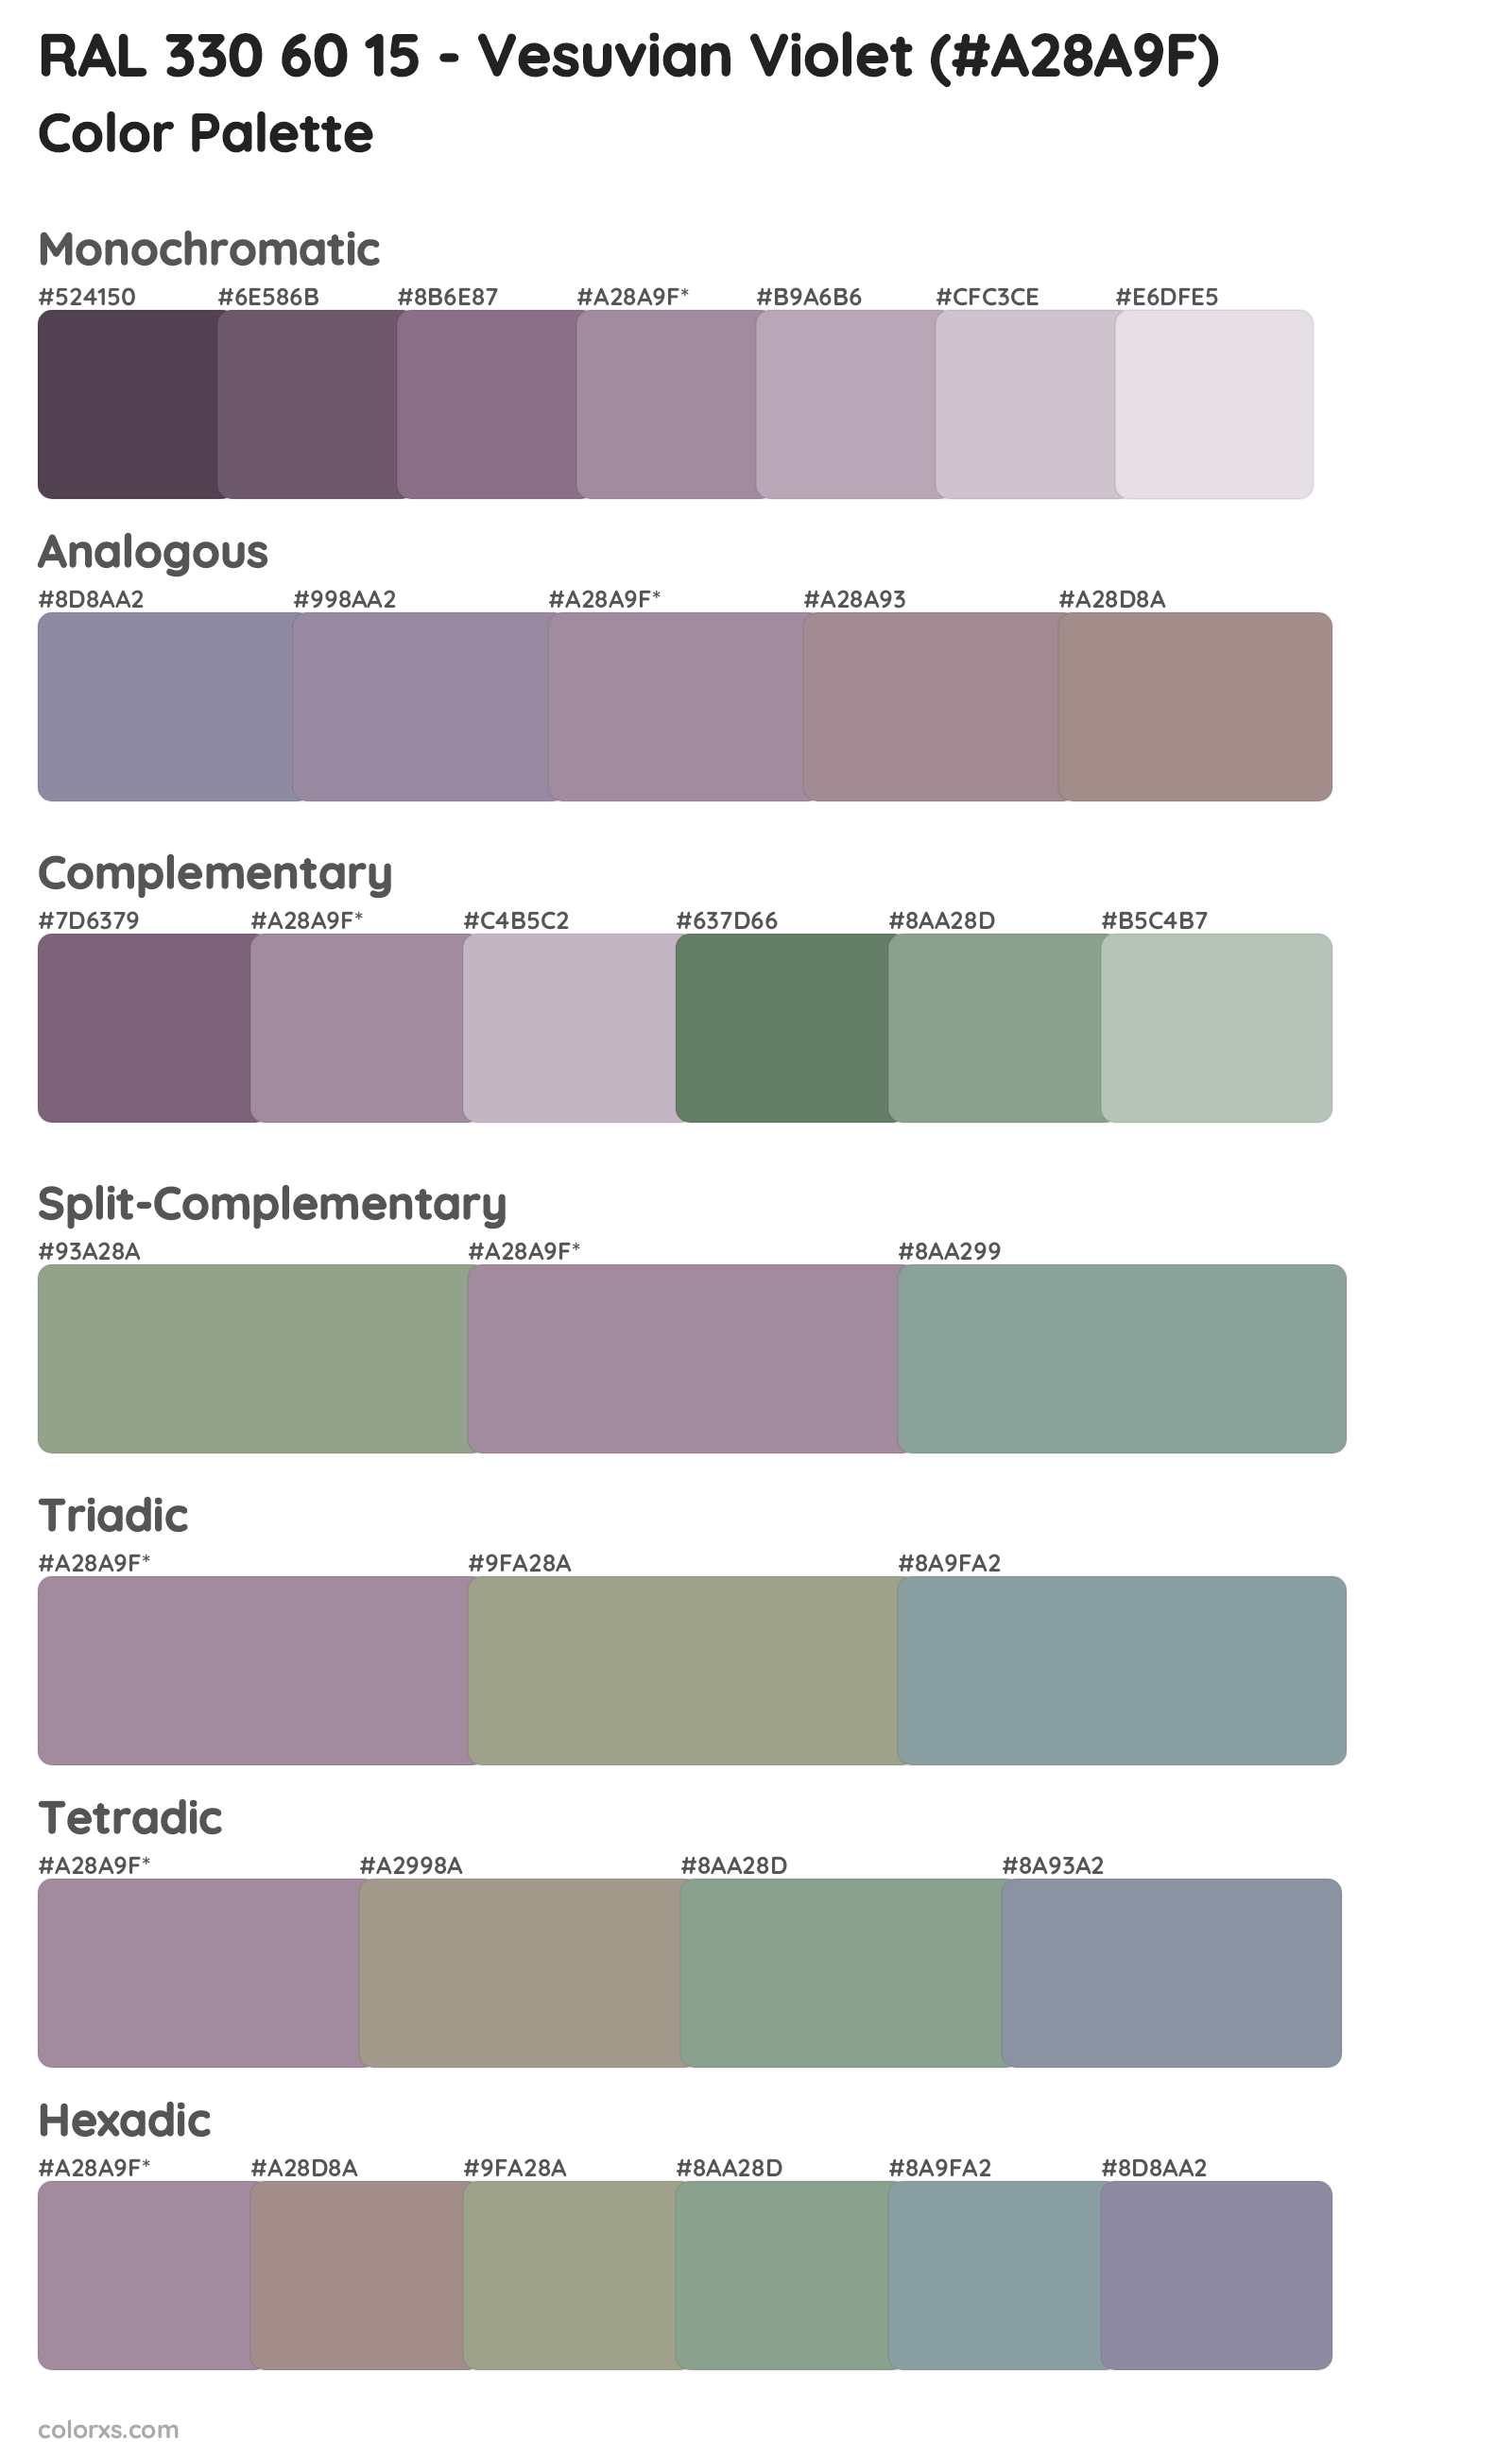 RAL 330 60 15 - Vesuvian Violet Color Scheme Palettes